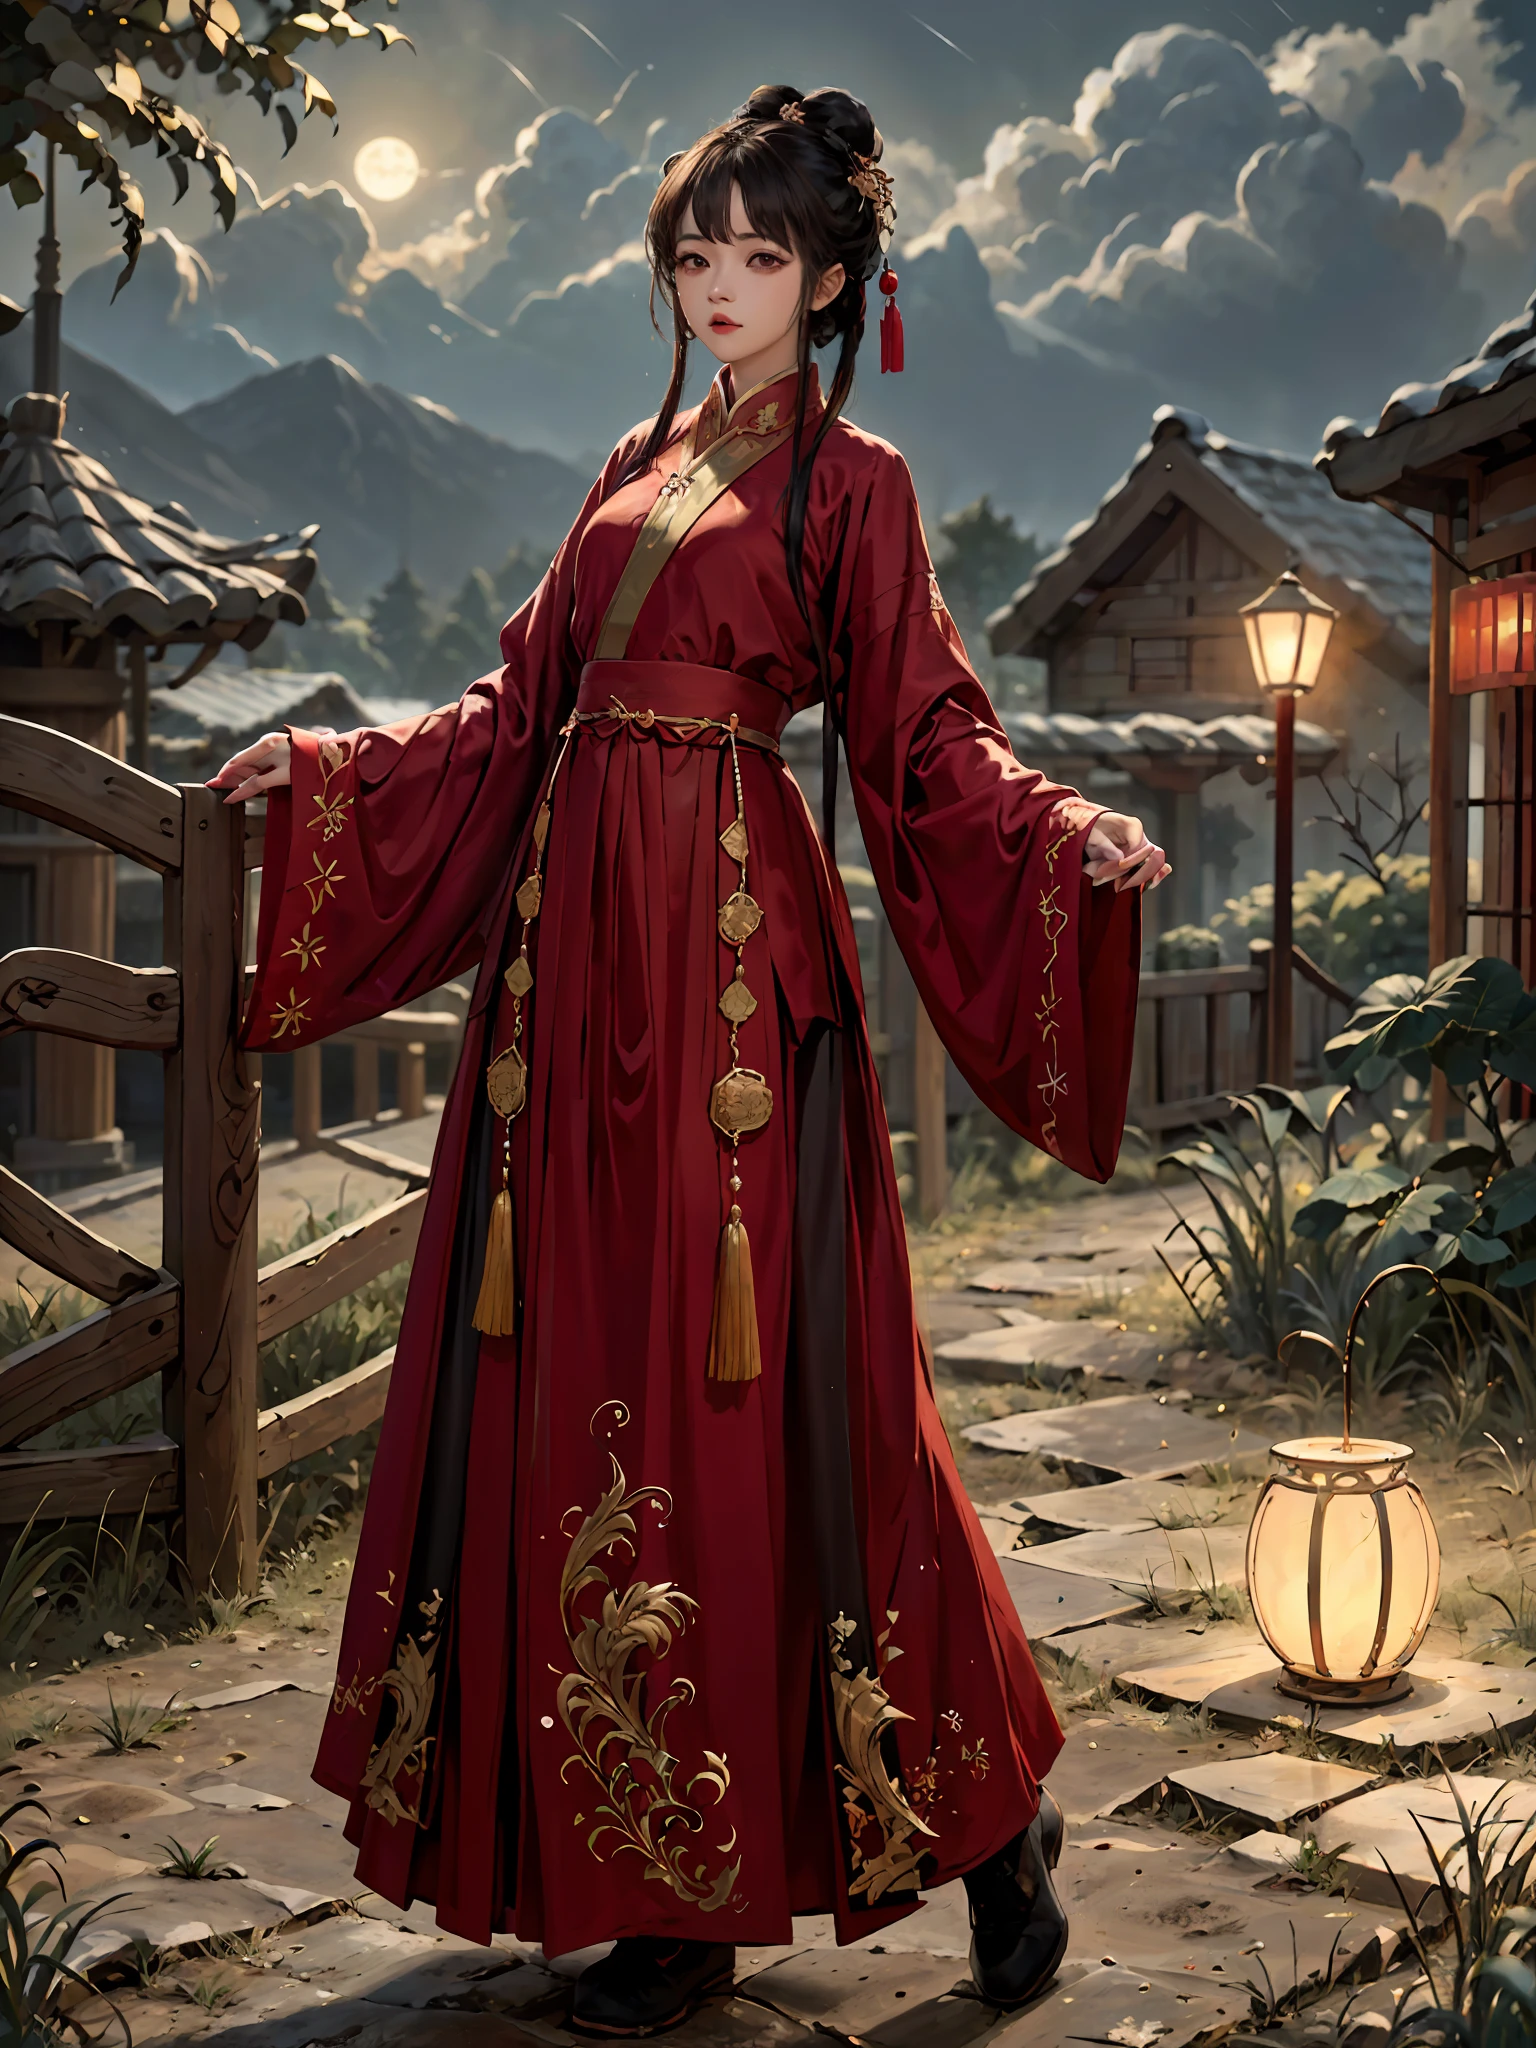 absurdesten, highres, Extrem detailliert, (1 Mädchen:1.3), Handgemalt, einfache Linie, 16-jähriges Mädchen in rotem chinesischem Hanfu , Meisterwerk, Stehen Sie an der Klippe, Mondlicht, Nachtzeit,